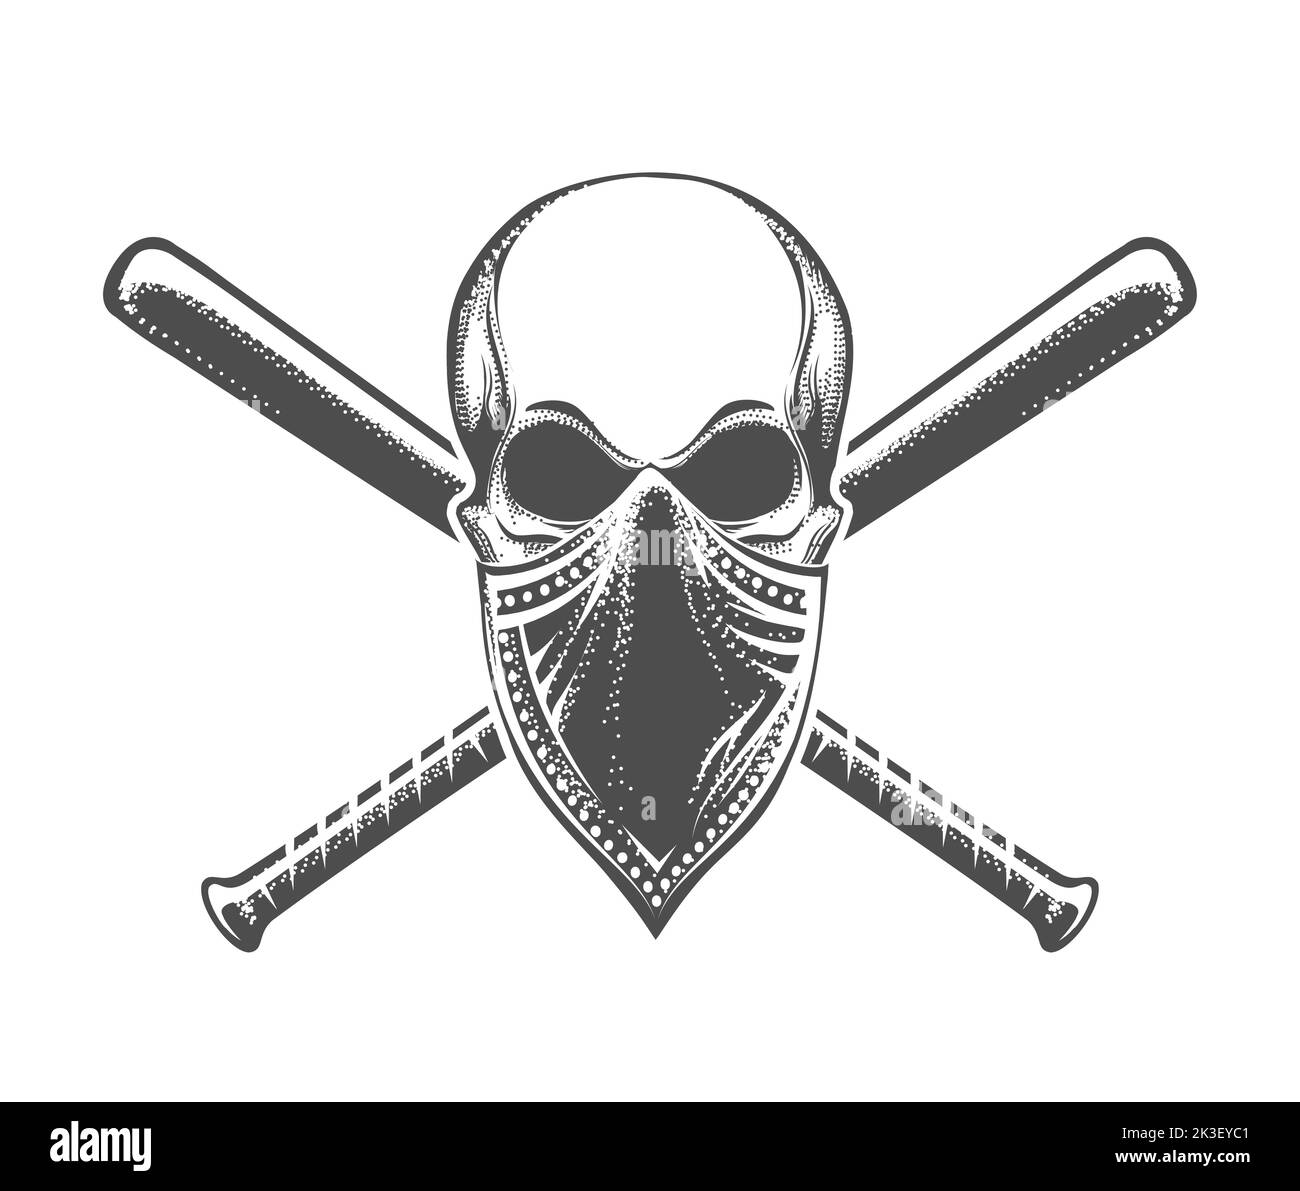 Skull bandana Banque d'images noir et blanc - Alamy